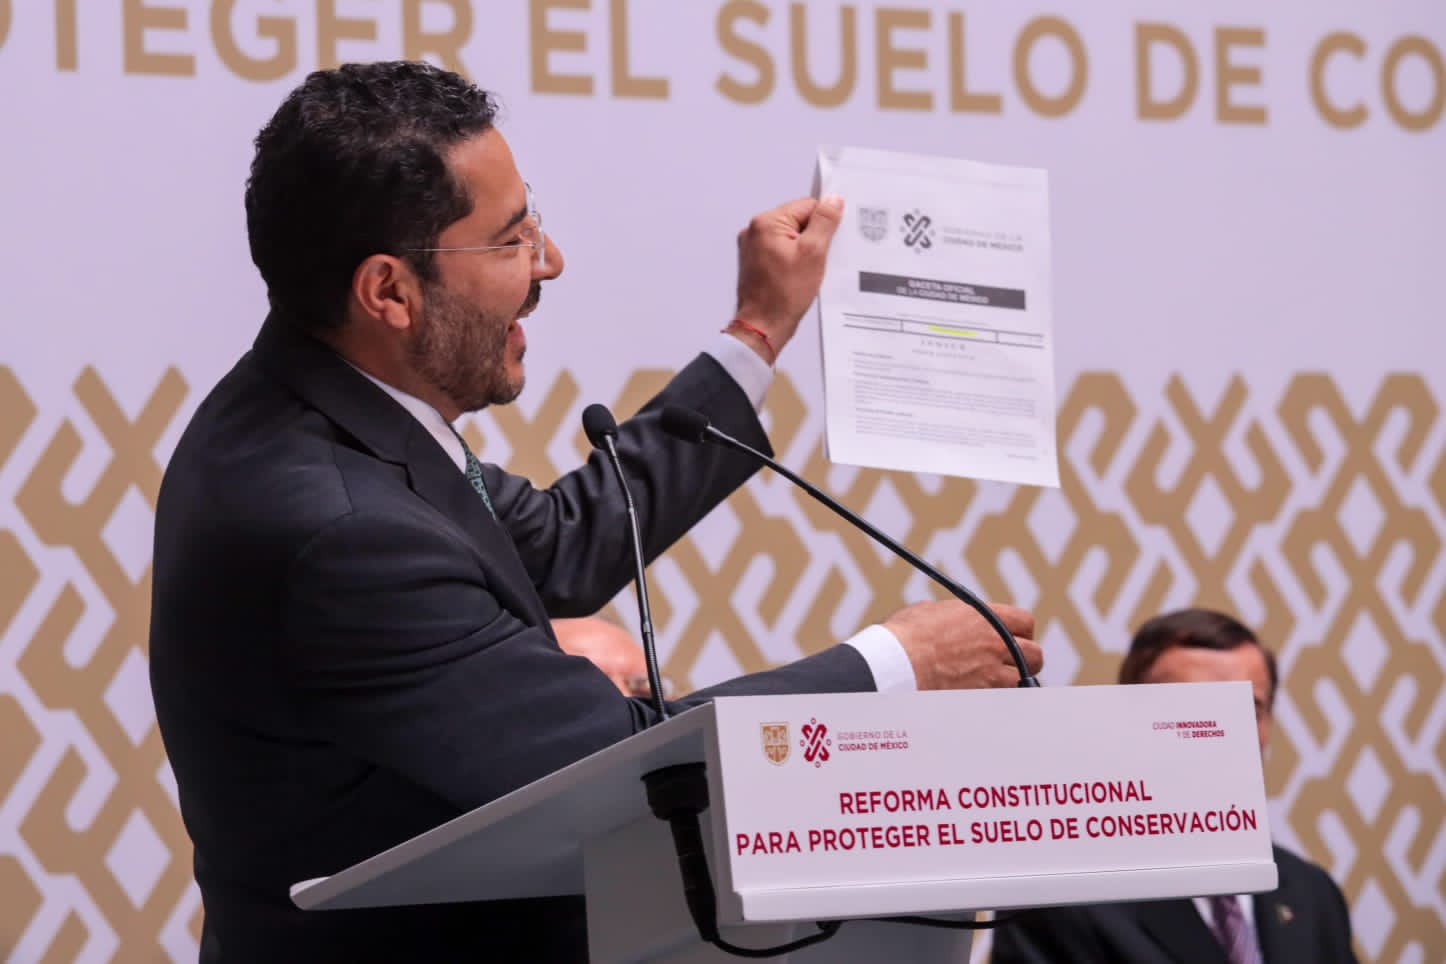 Reforma Constitucional en CDMX Clasificación de territorio en suelo urbano y de conservación